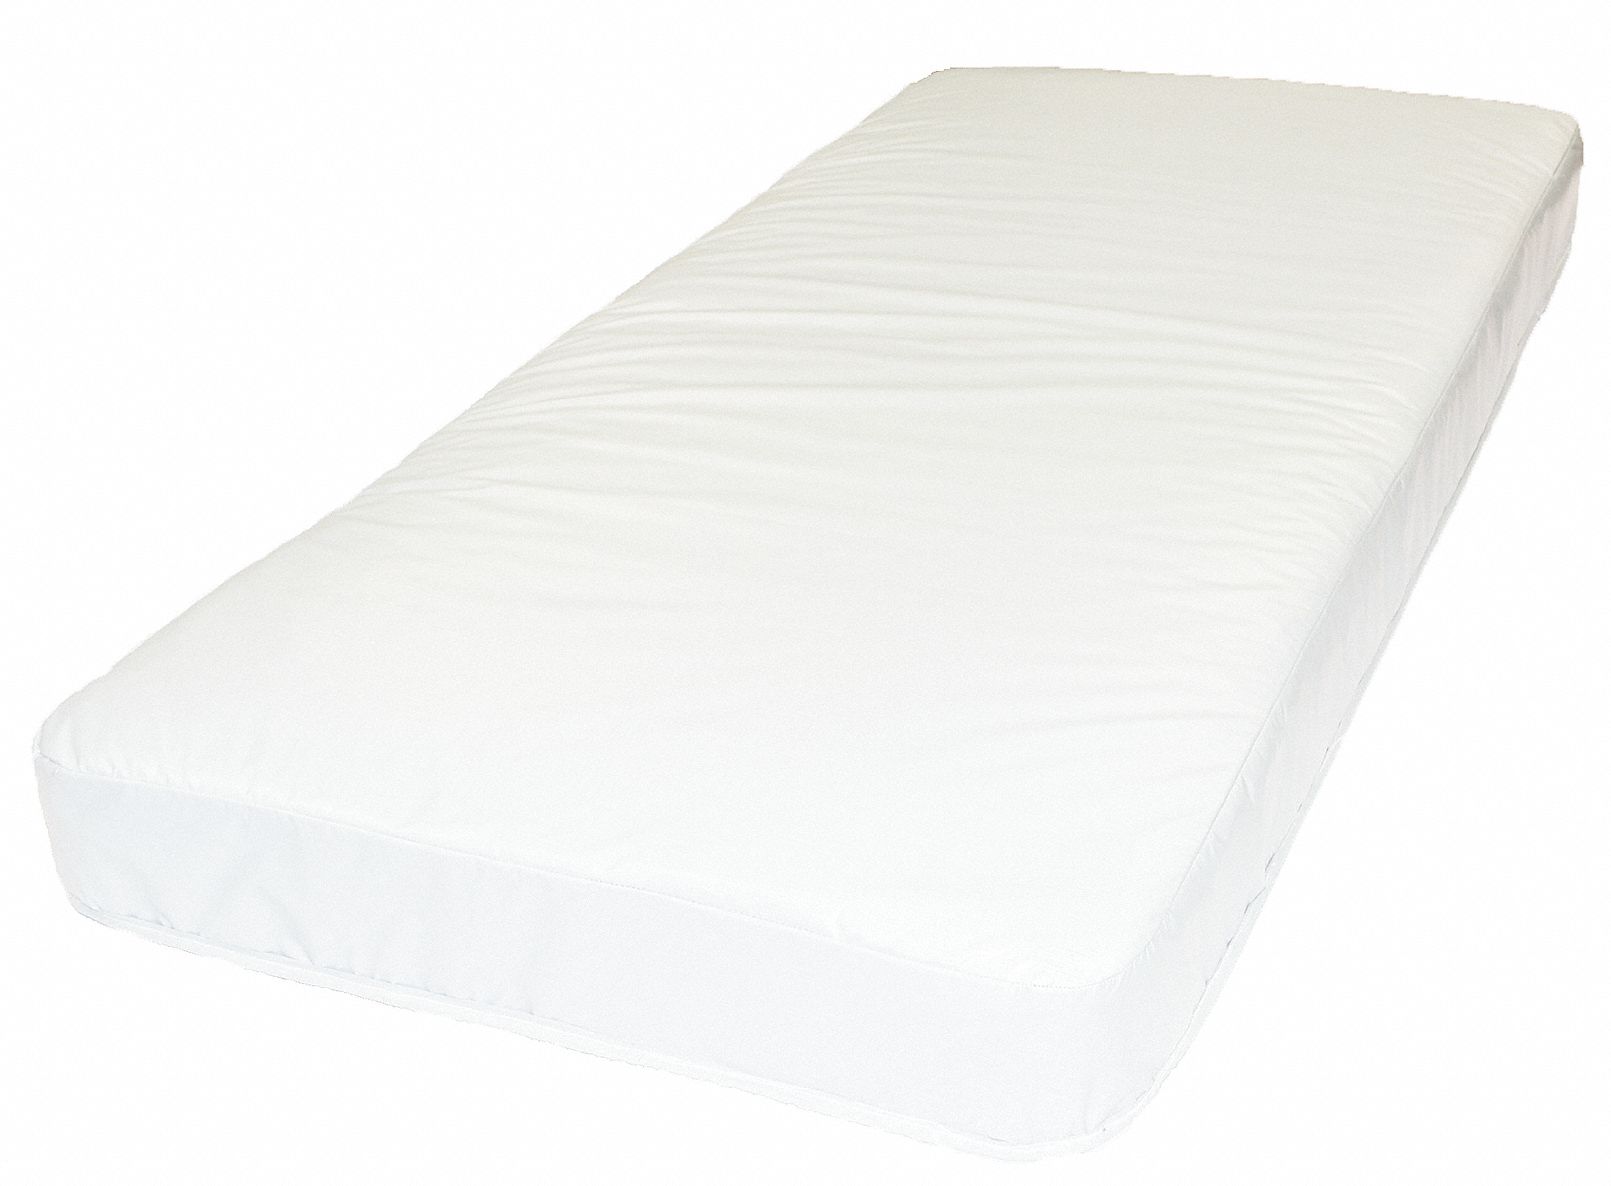 84 inch long twin mattress